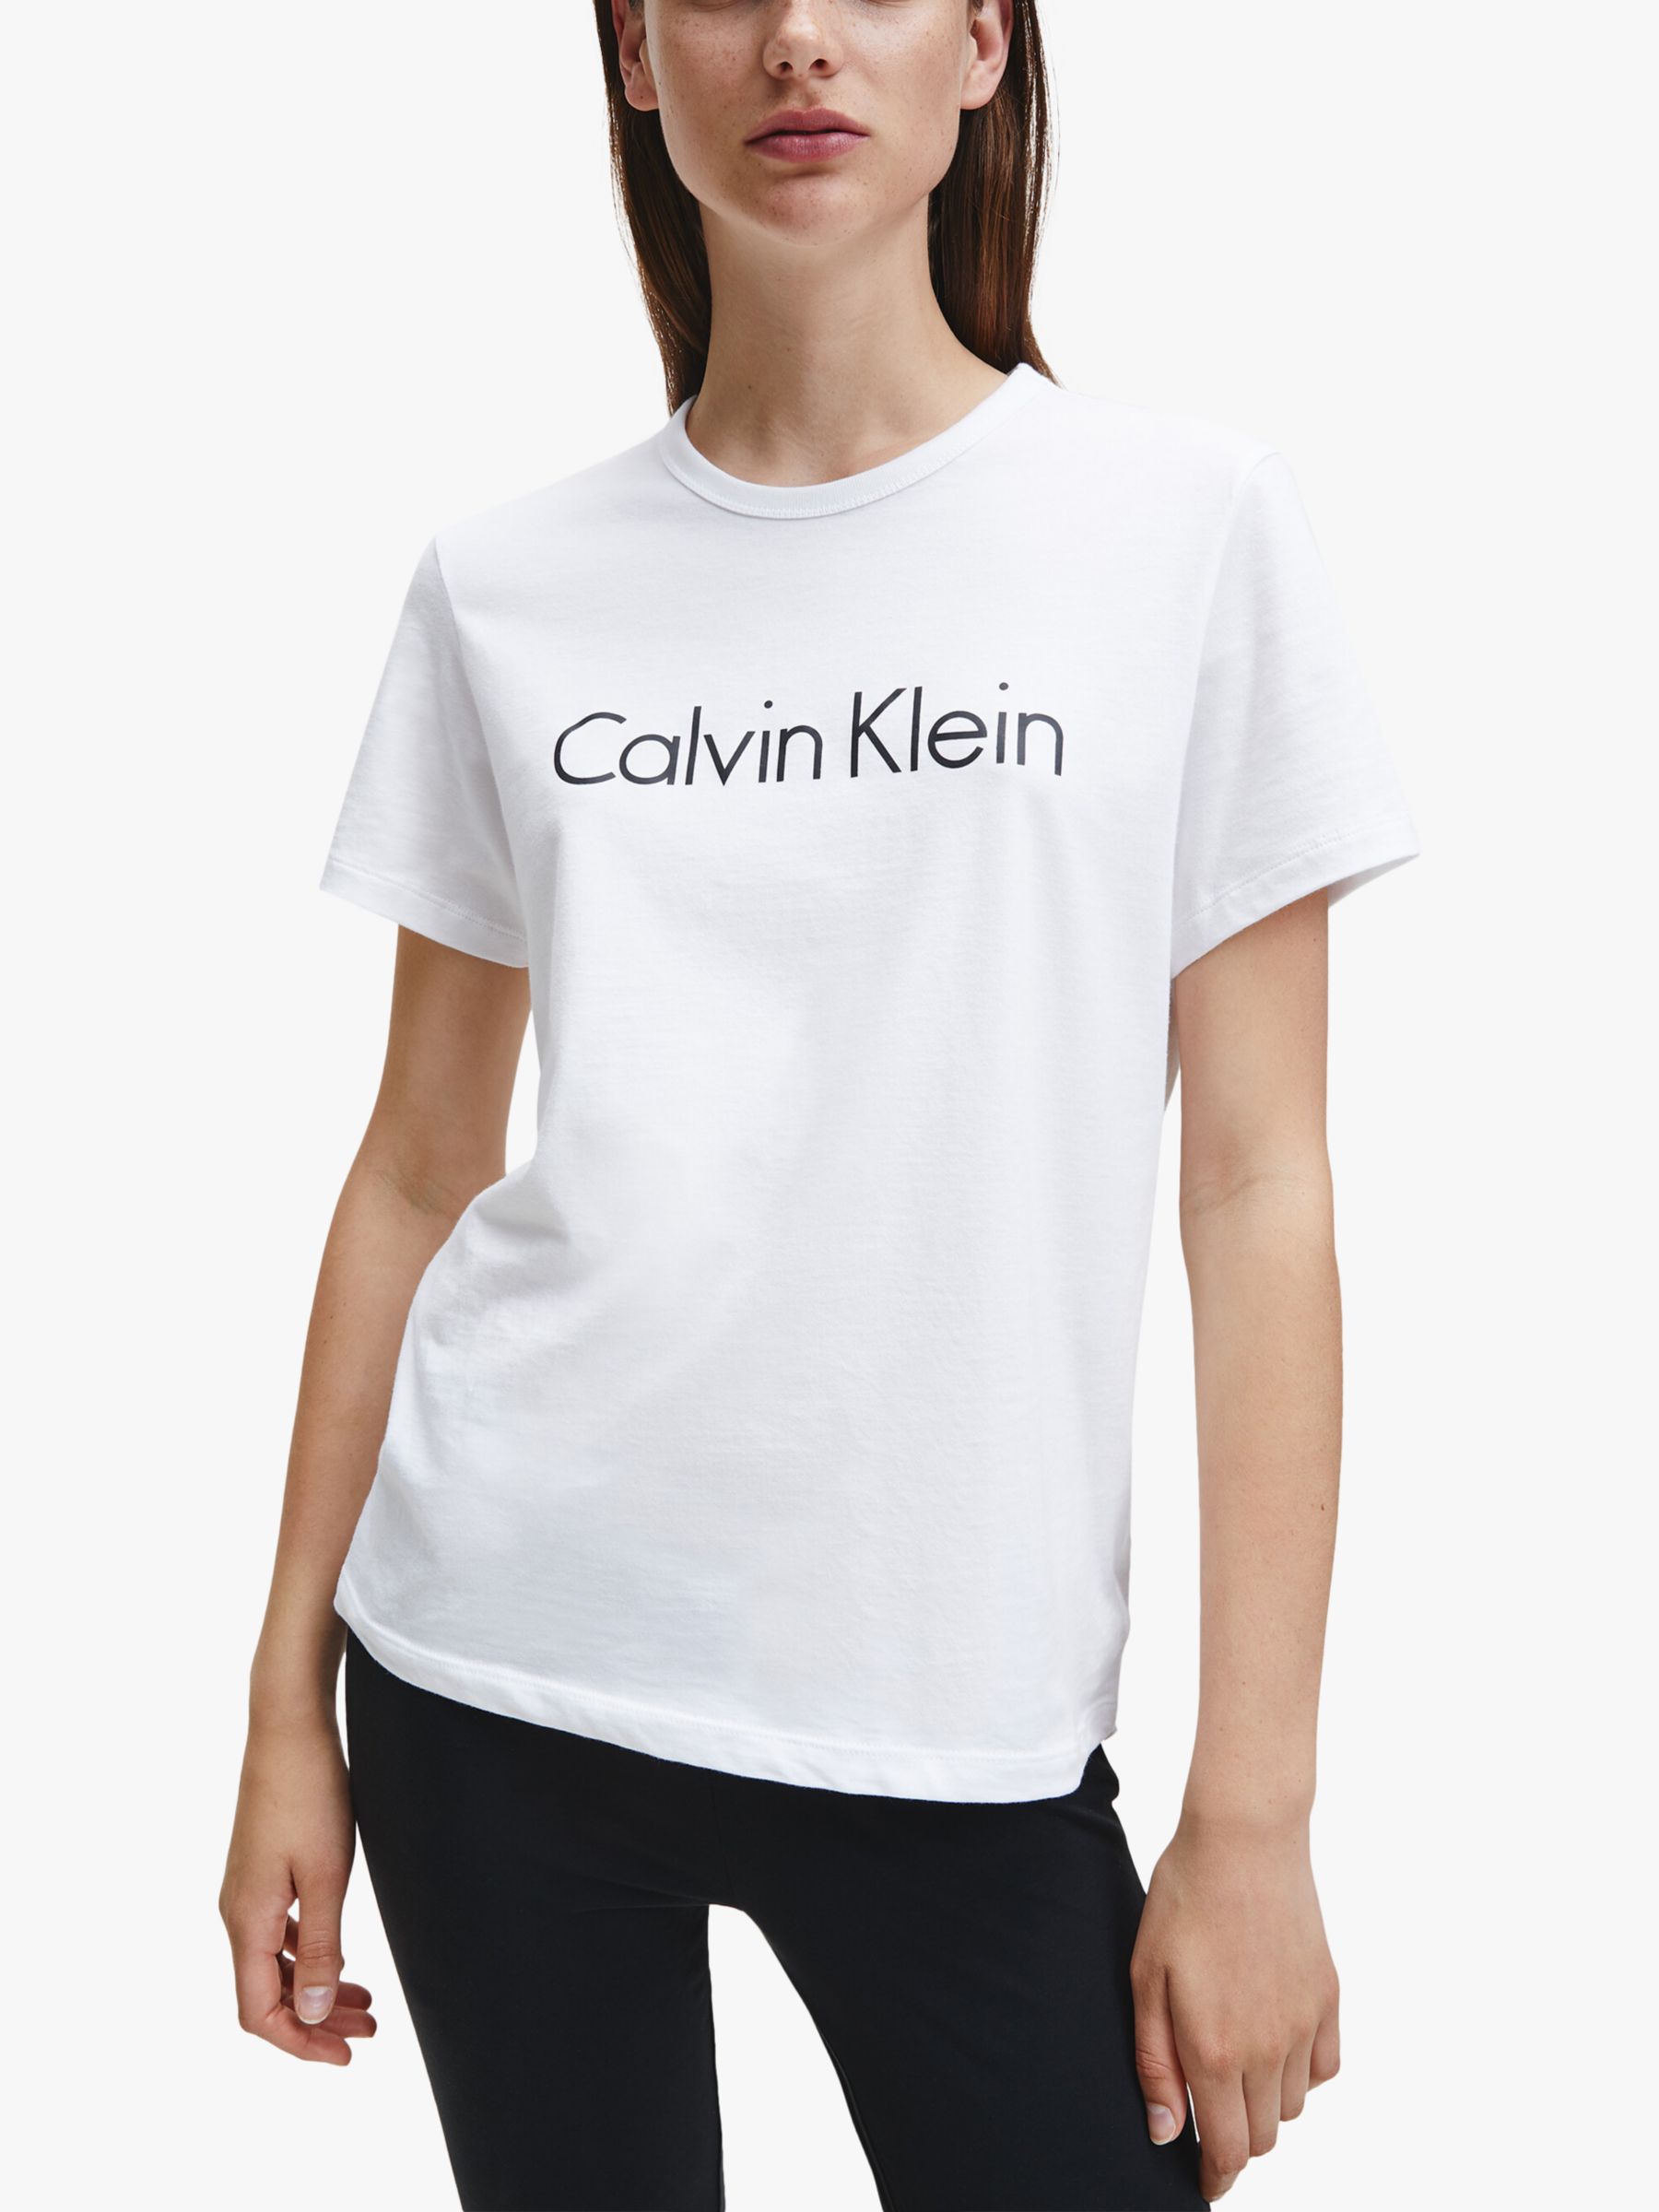 Calvin Klein Women's Nightwear | John Lewis & Partners